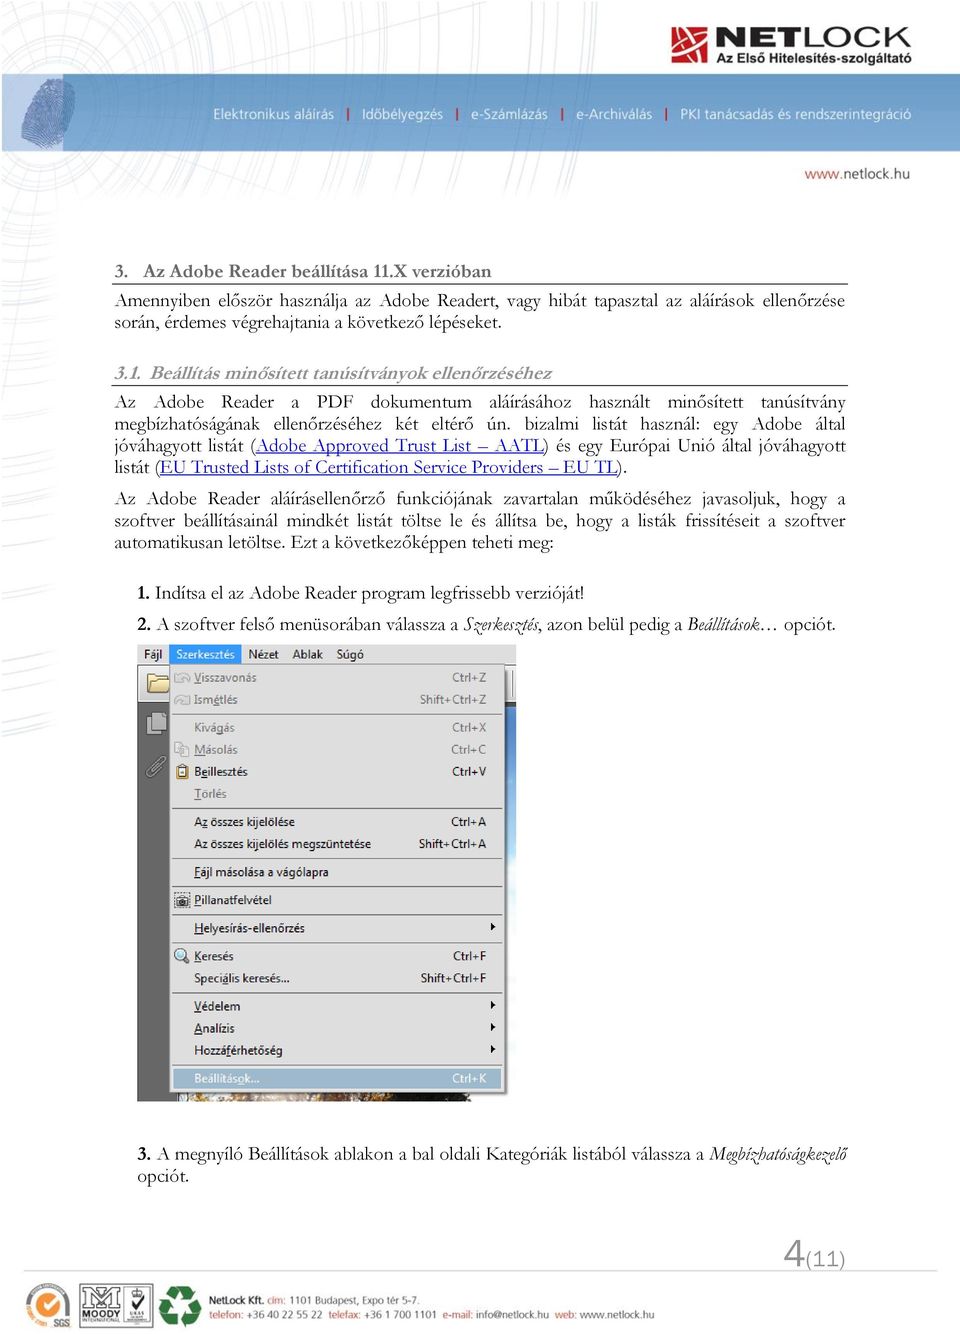 Beállítás minősített tanúsítványok ellenőrzéséhez Az Adobe Reader a PDF dokumentum aláírásához használt minősített tanúsítvány megbízhatóságának ellenőrzéséhez két eltérő ún.